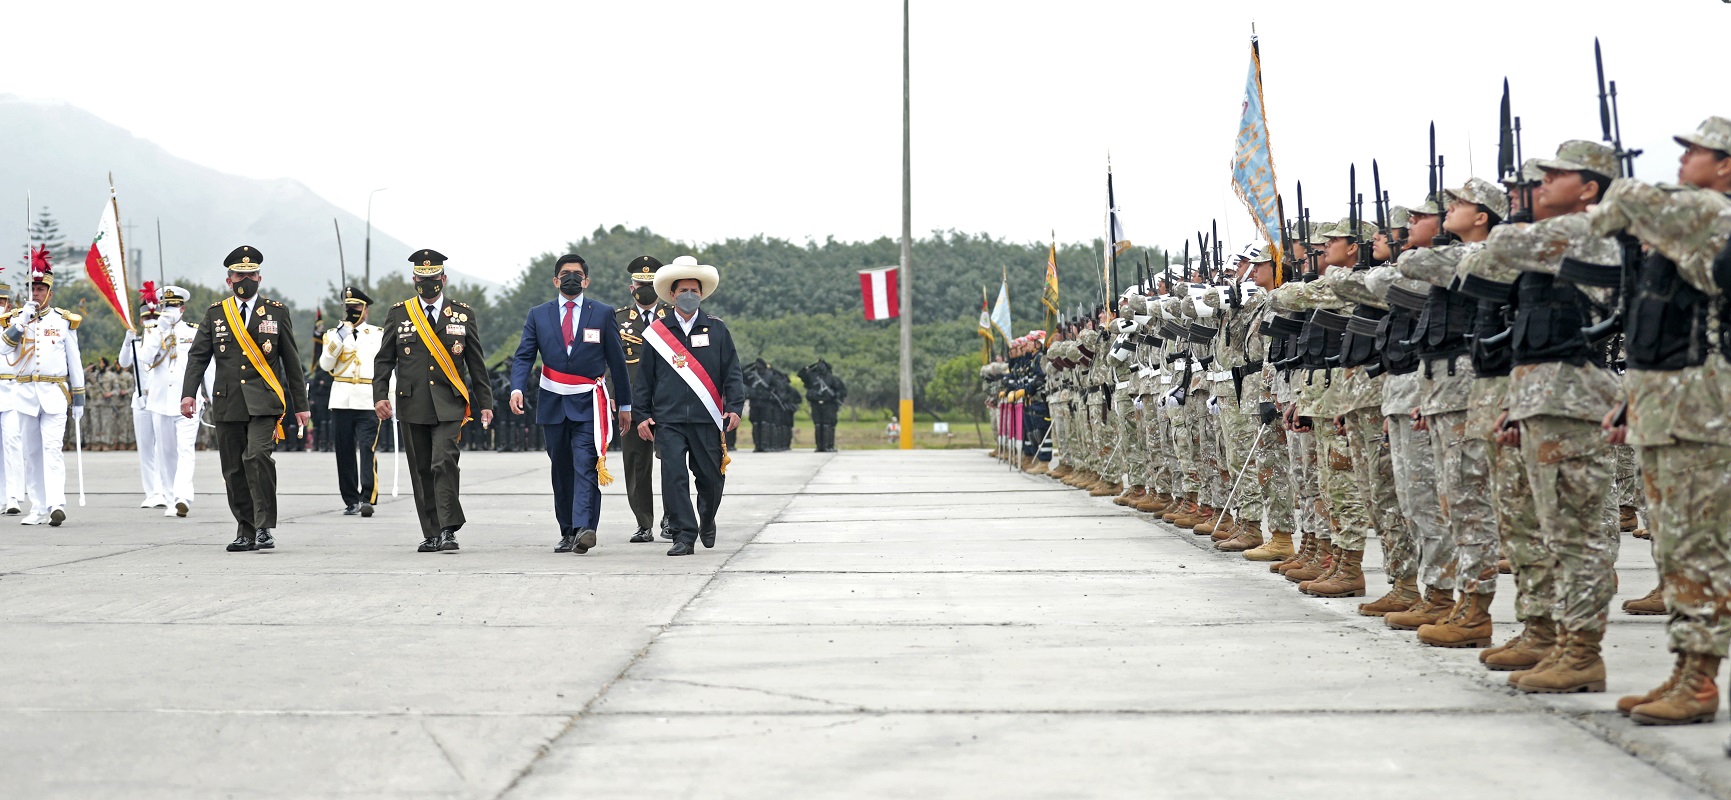 Retomar la agenda que interesa a los peruanos es estar unidos, invocó presidente Castillo en el Día del Ejército.